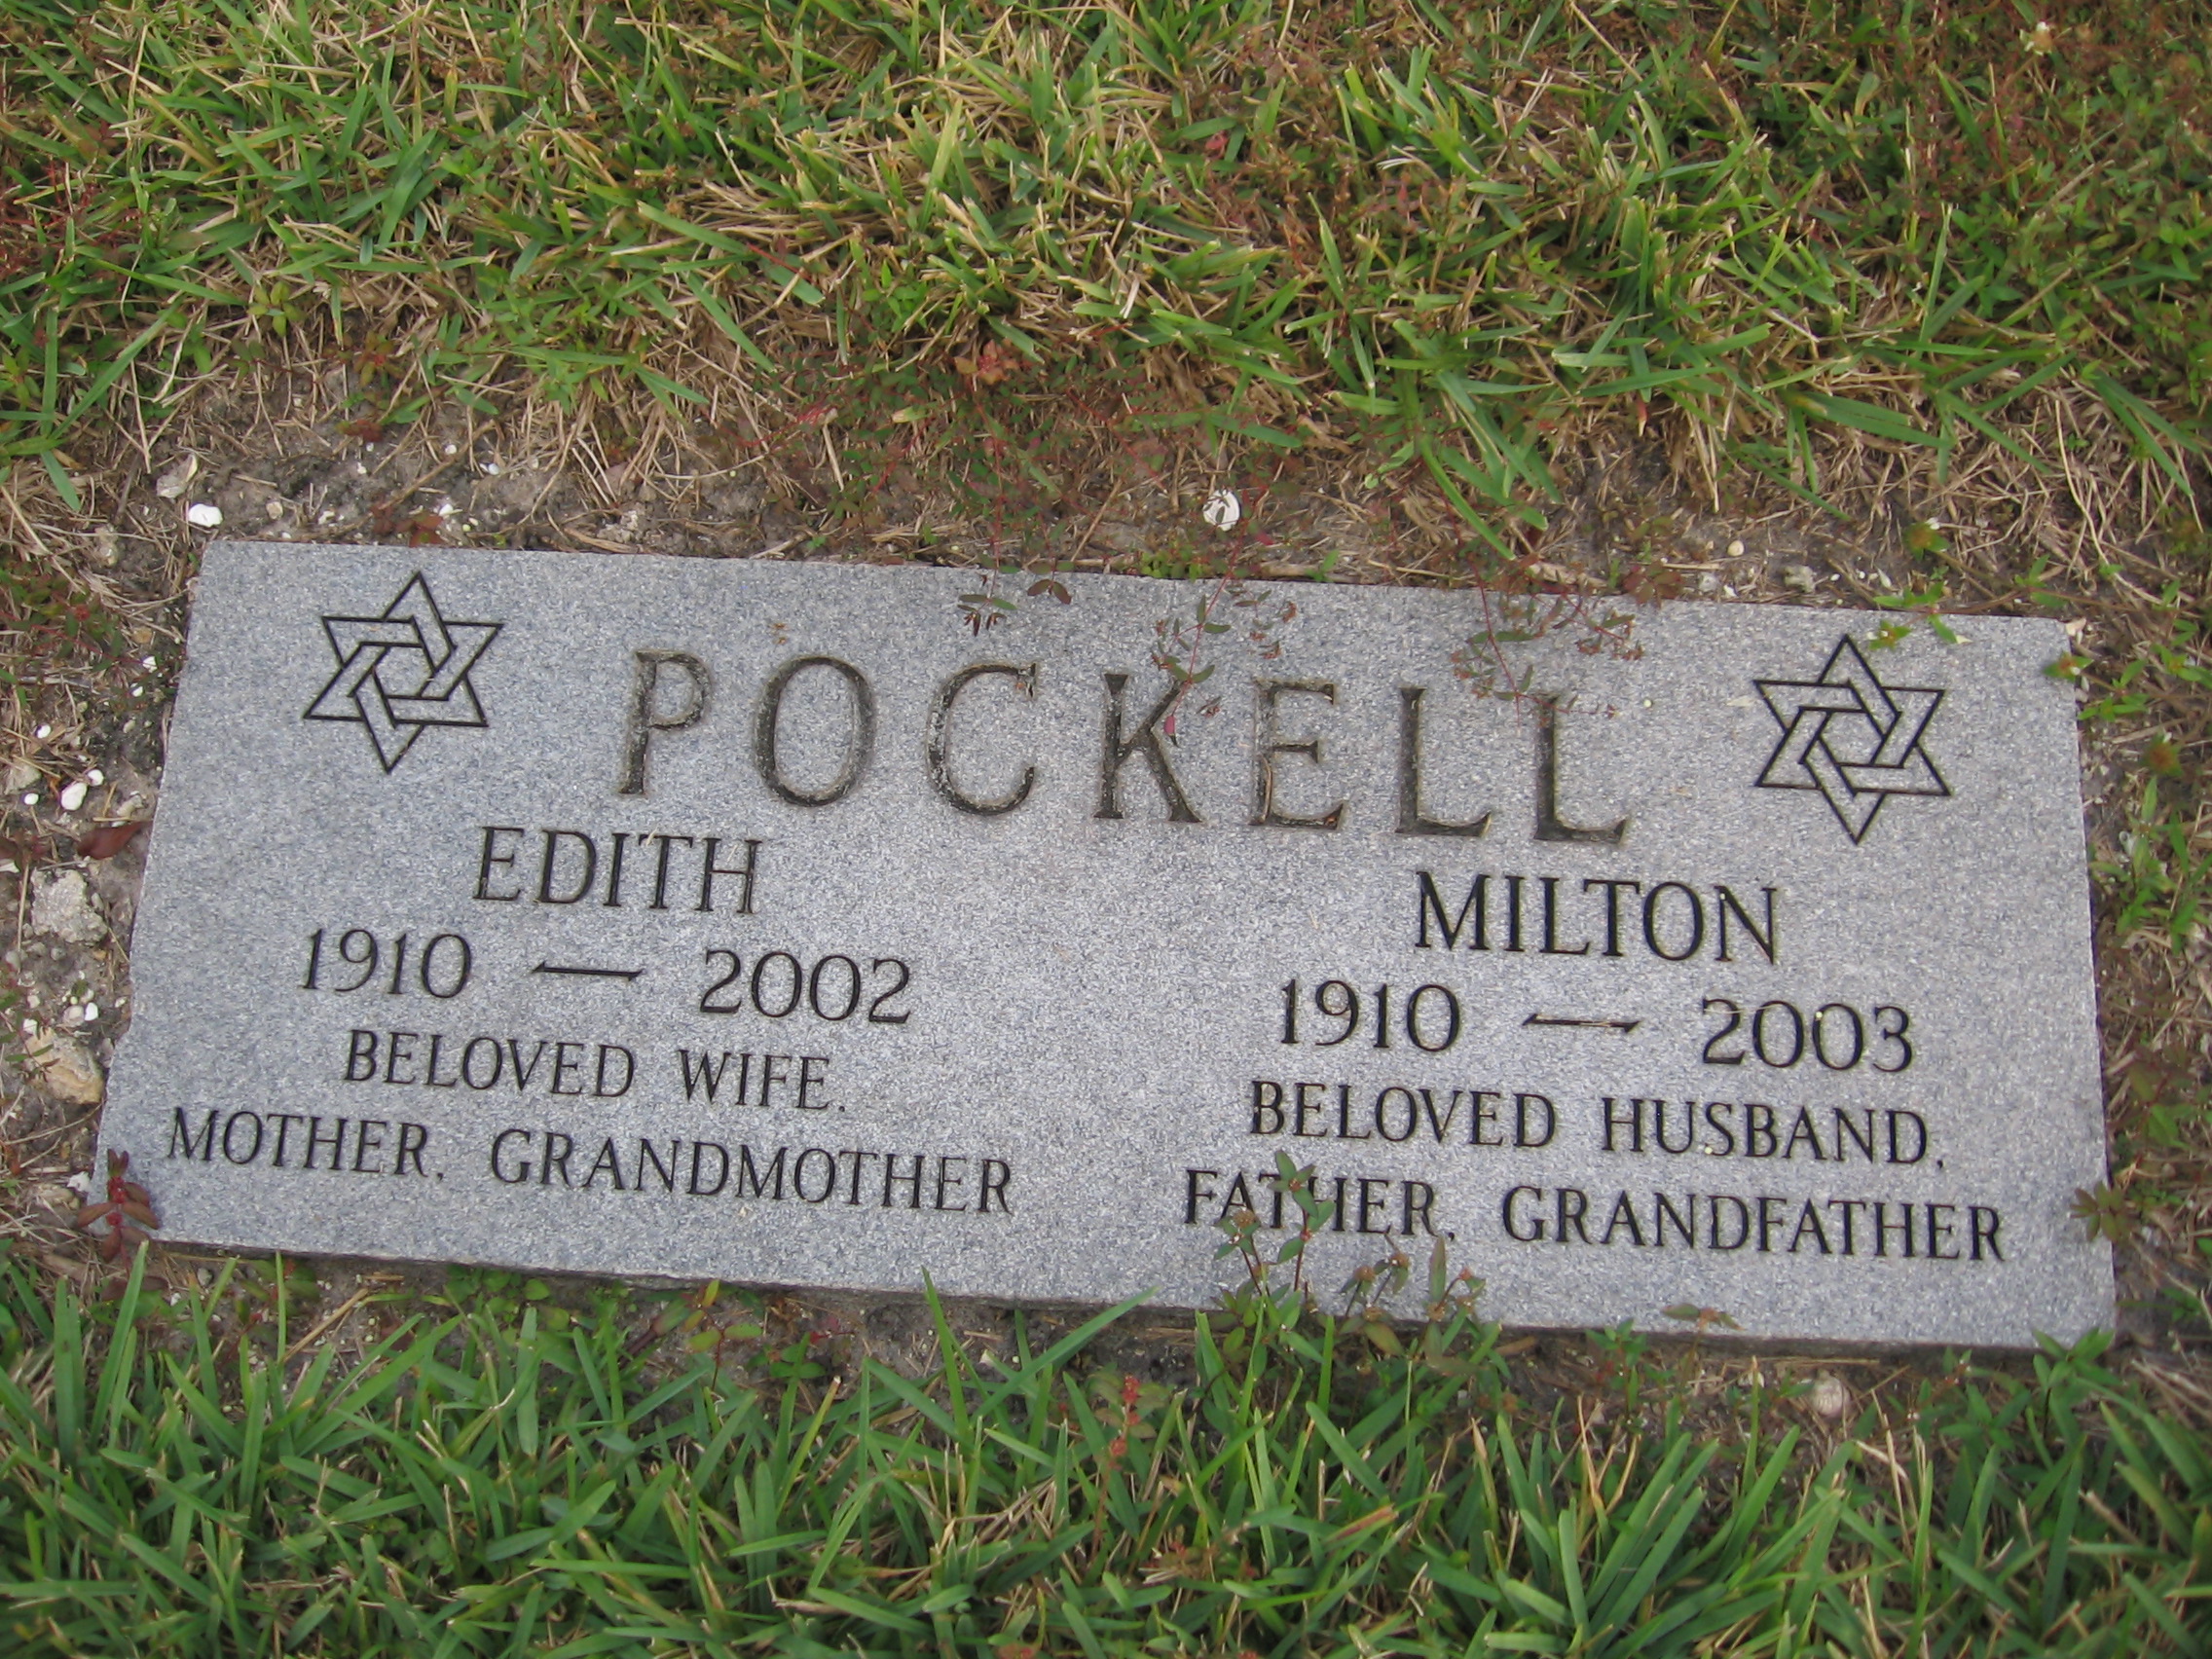 Edith Pockell